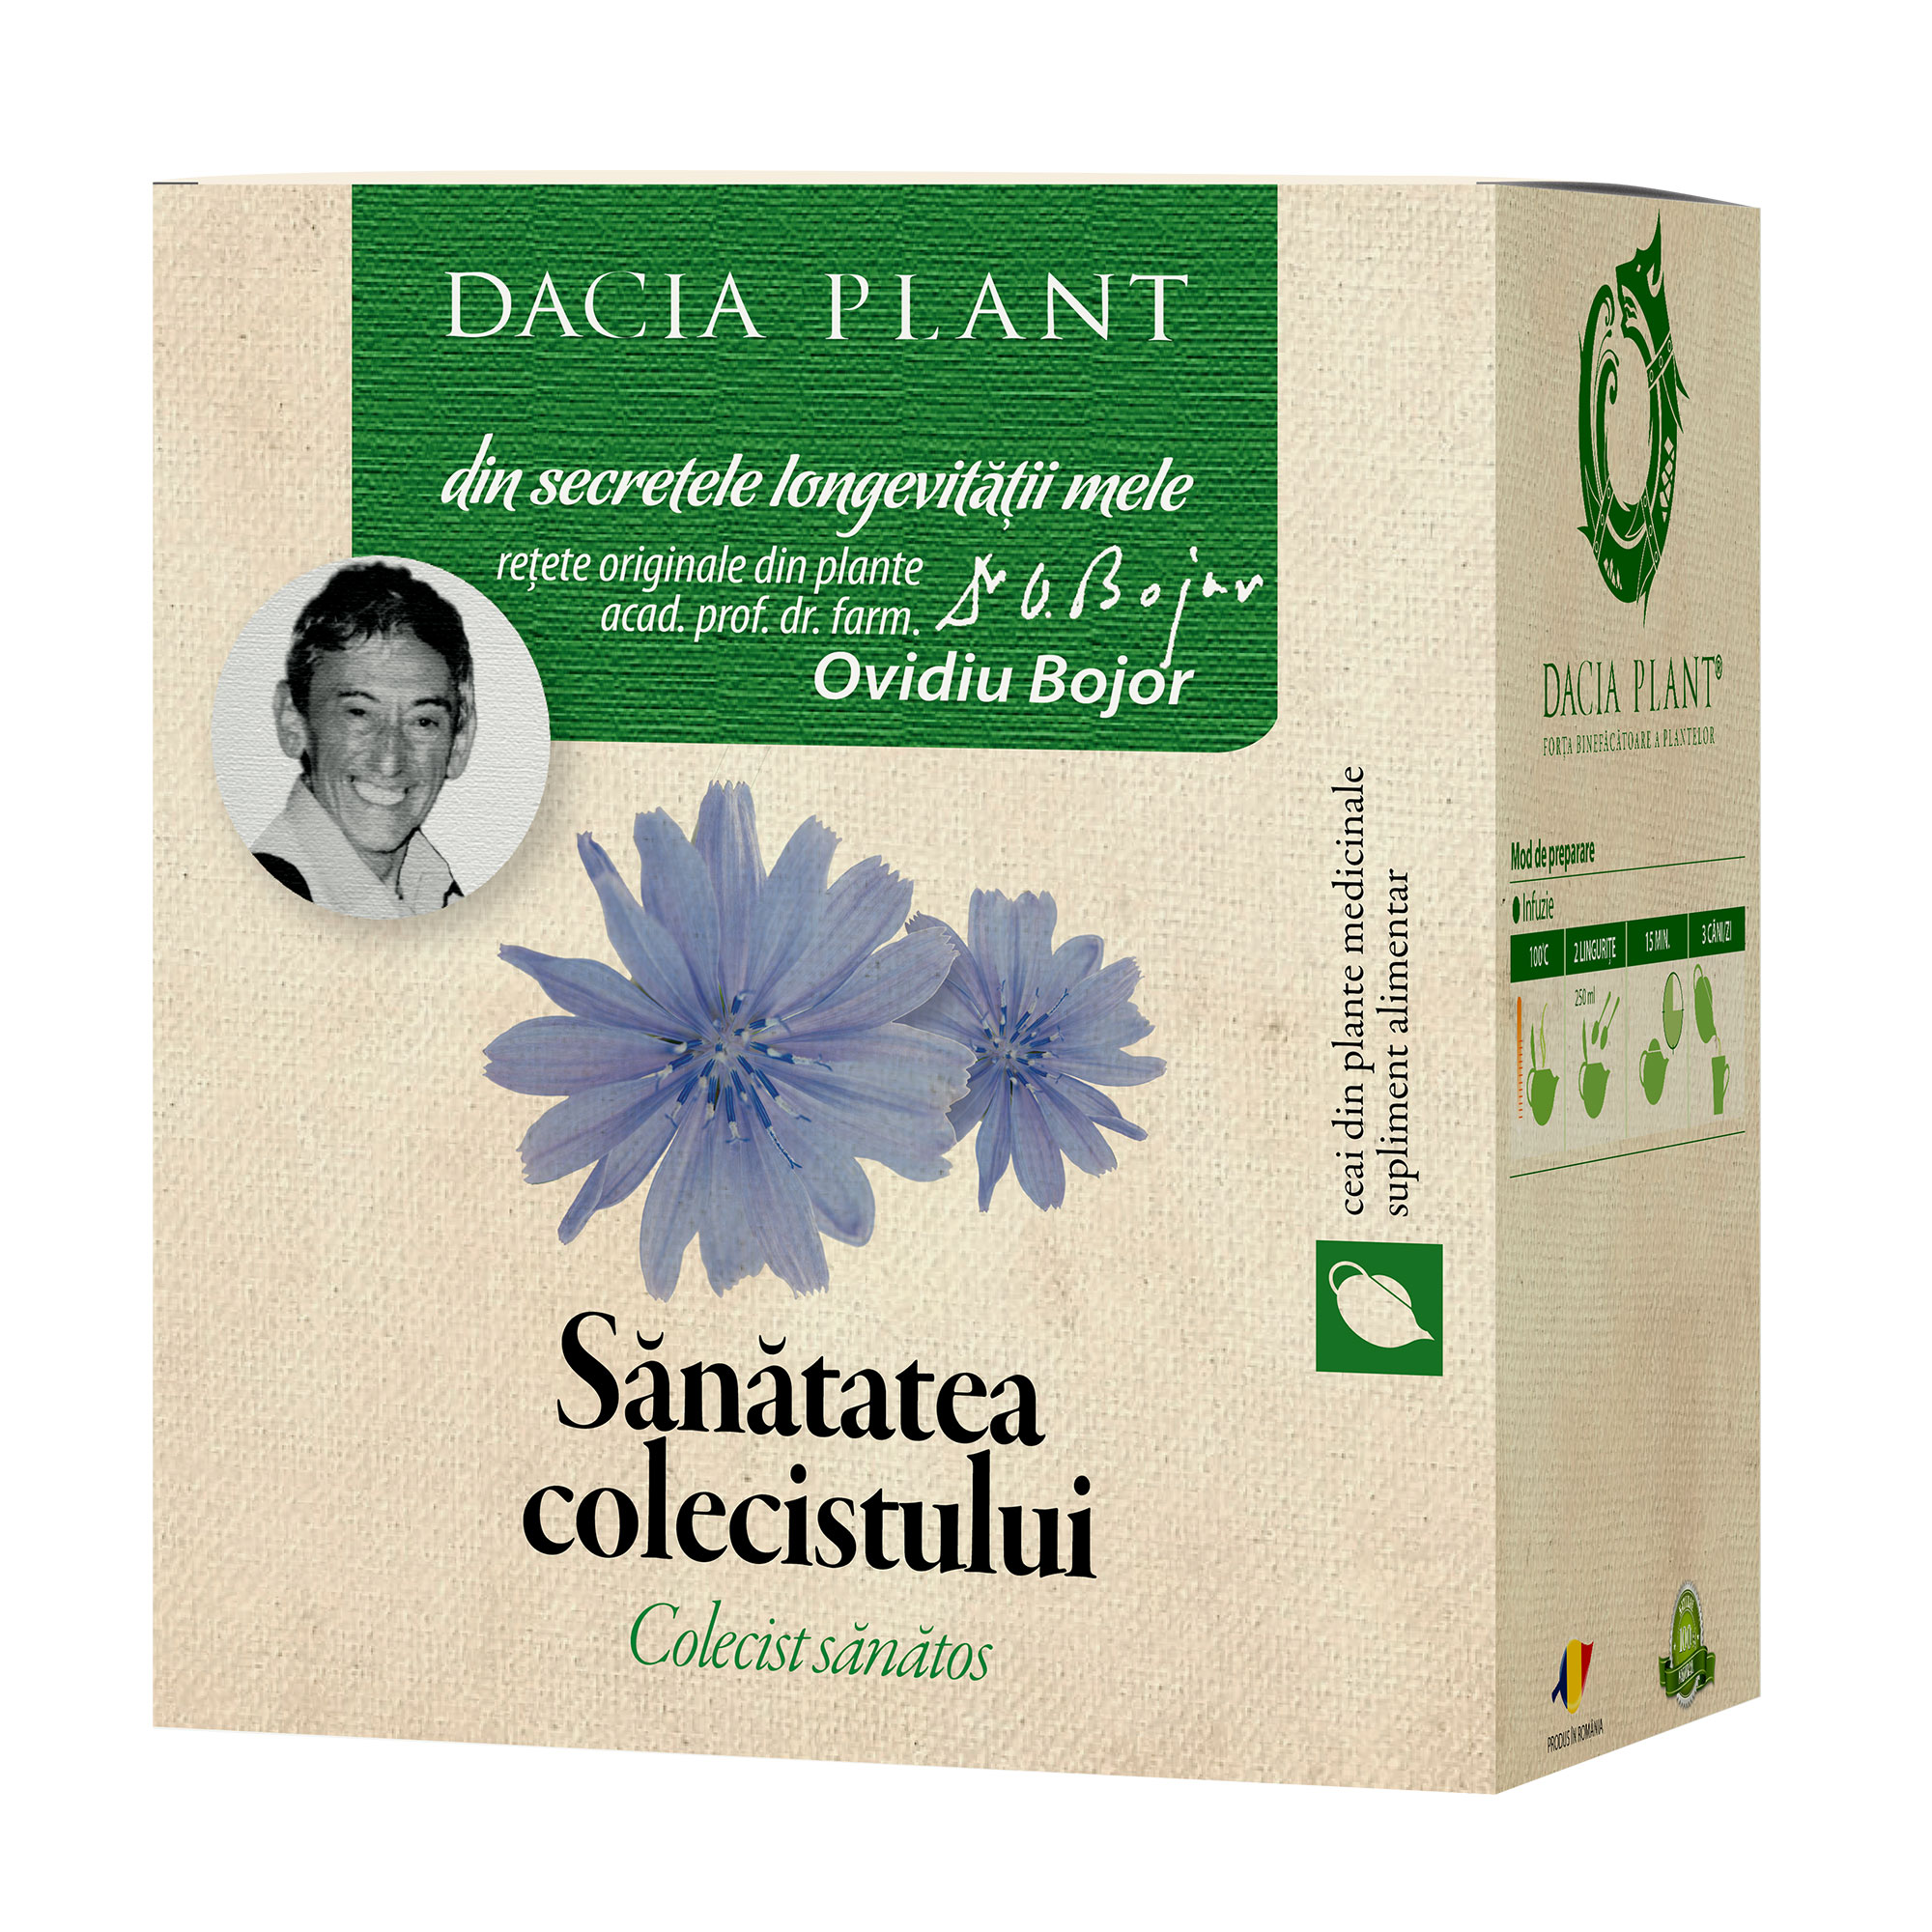 Sanatatea Colecistului ceai Dacia Plant imagine noua